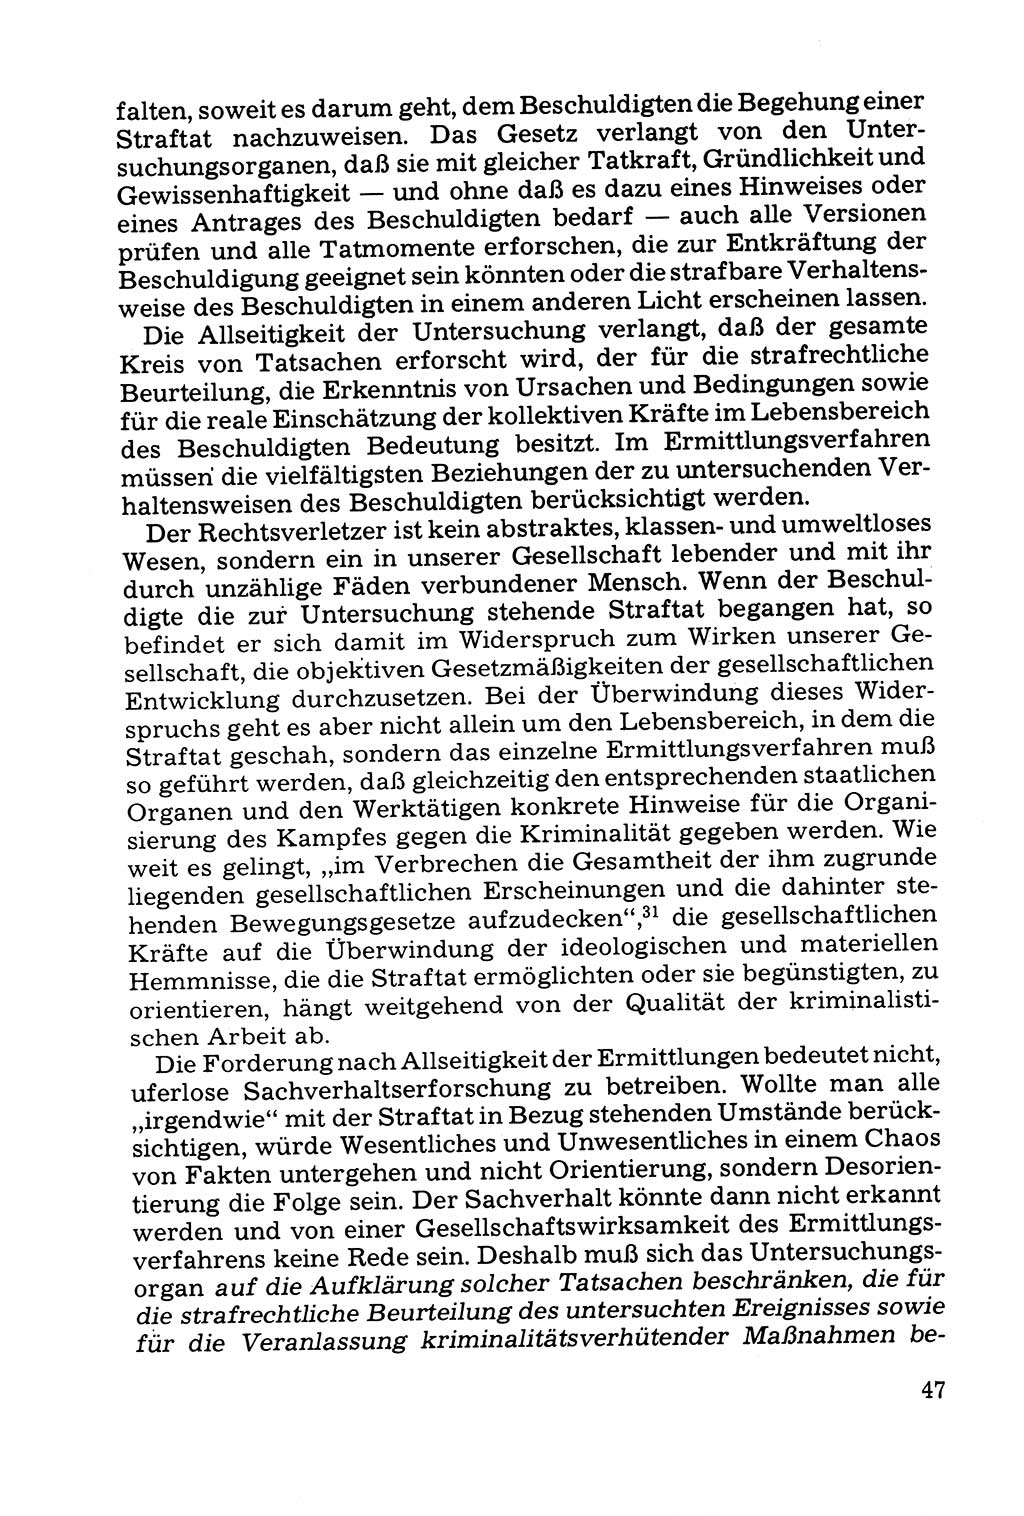 Grundfragen der Beweisführung im Ermittlungsverfahren [Deutsche Demokratische Republik (DDR)] 1980, Seite 47 (Bws.-Fhrg. EV DDR 1980, S. 47)